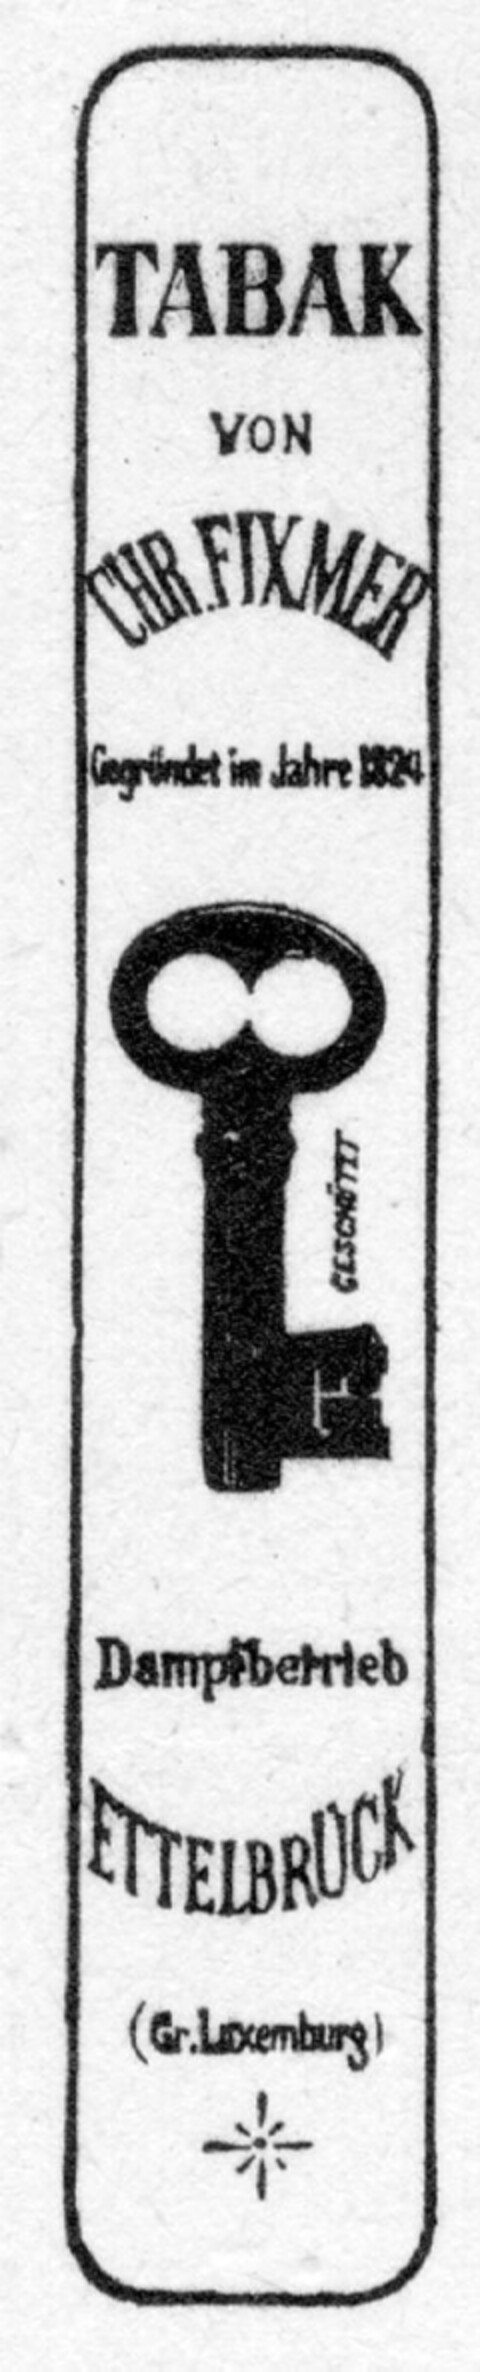 TABAK VON CHR. FIXMER Logo (DPMA, 11/01/1894)